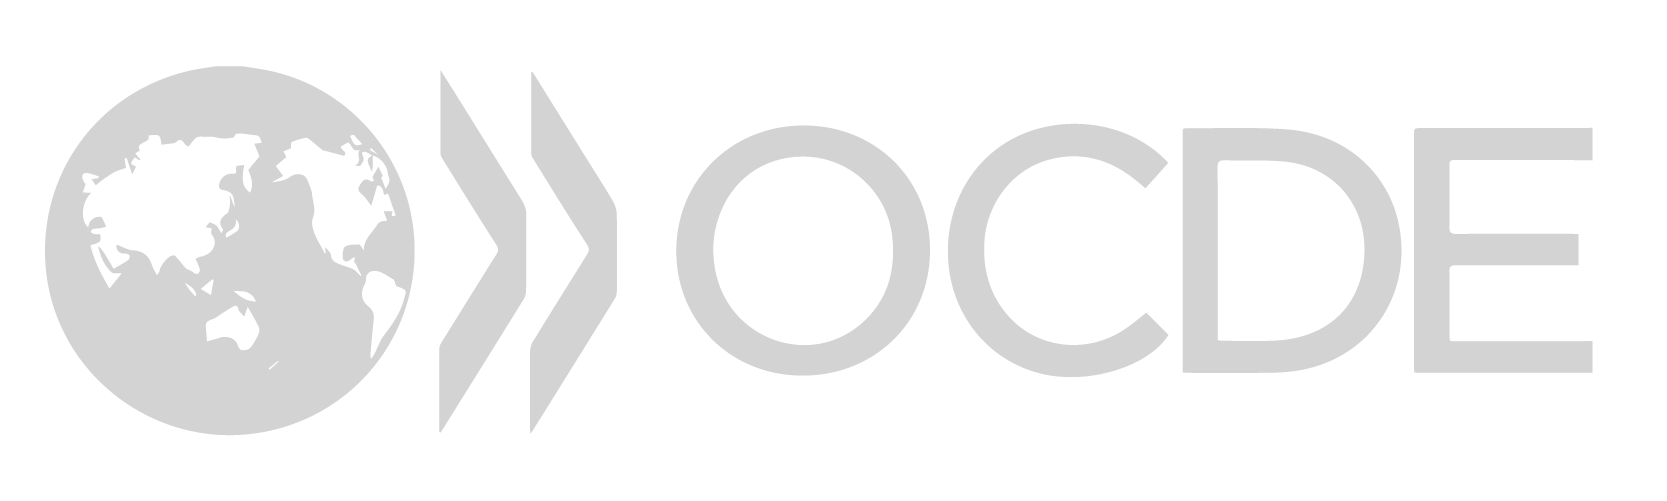 logos-07